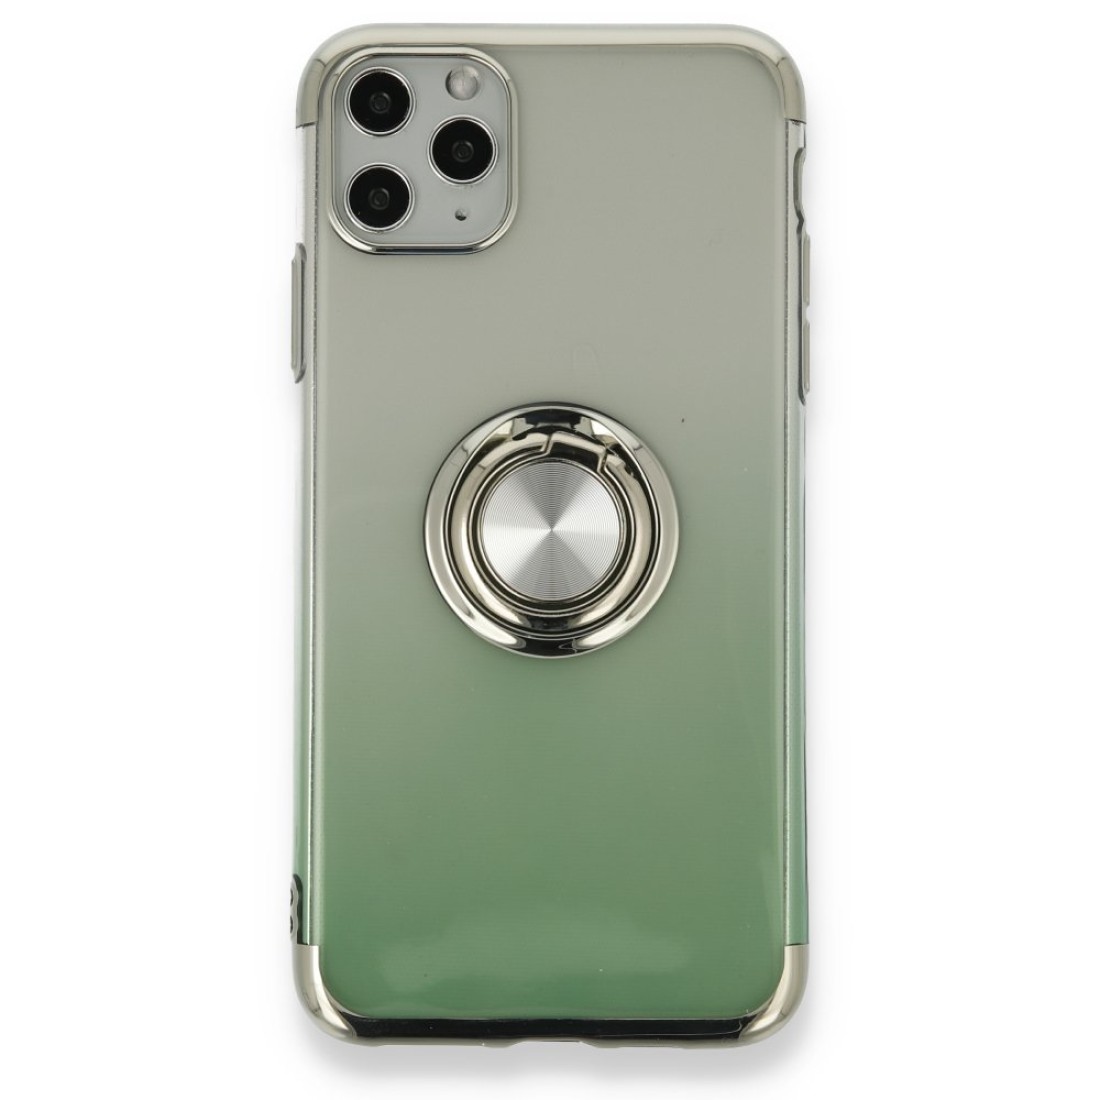 Apple iPhone 11 Pro Kılıf Marvel Yüzüklü Silikon - Yeşil